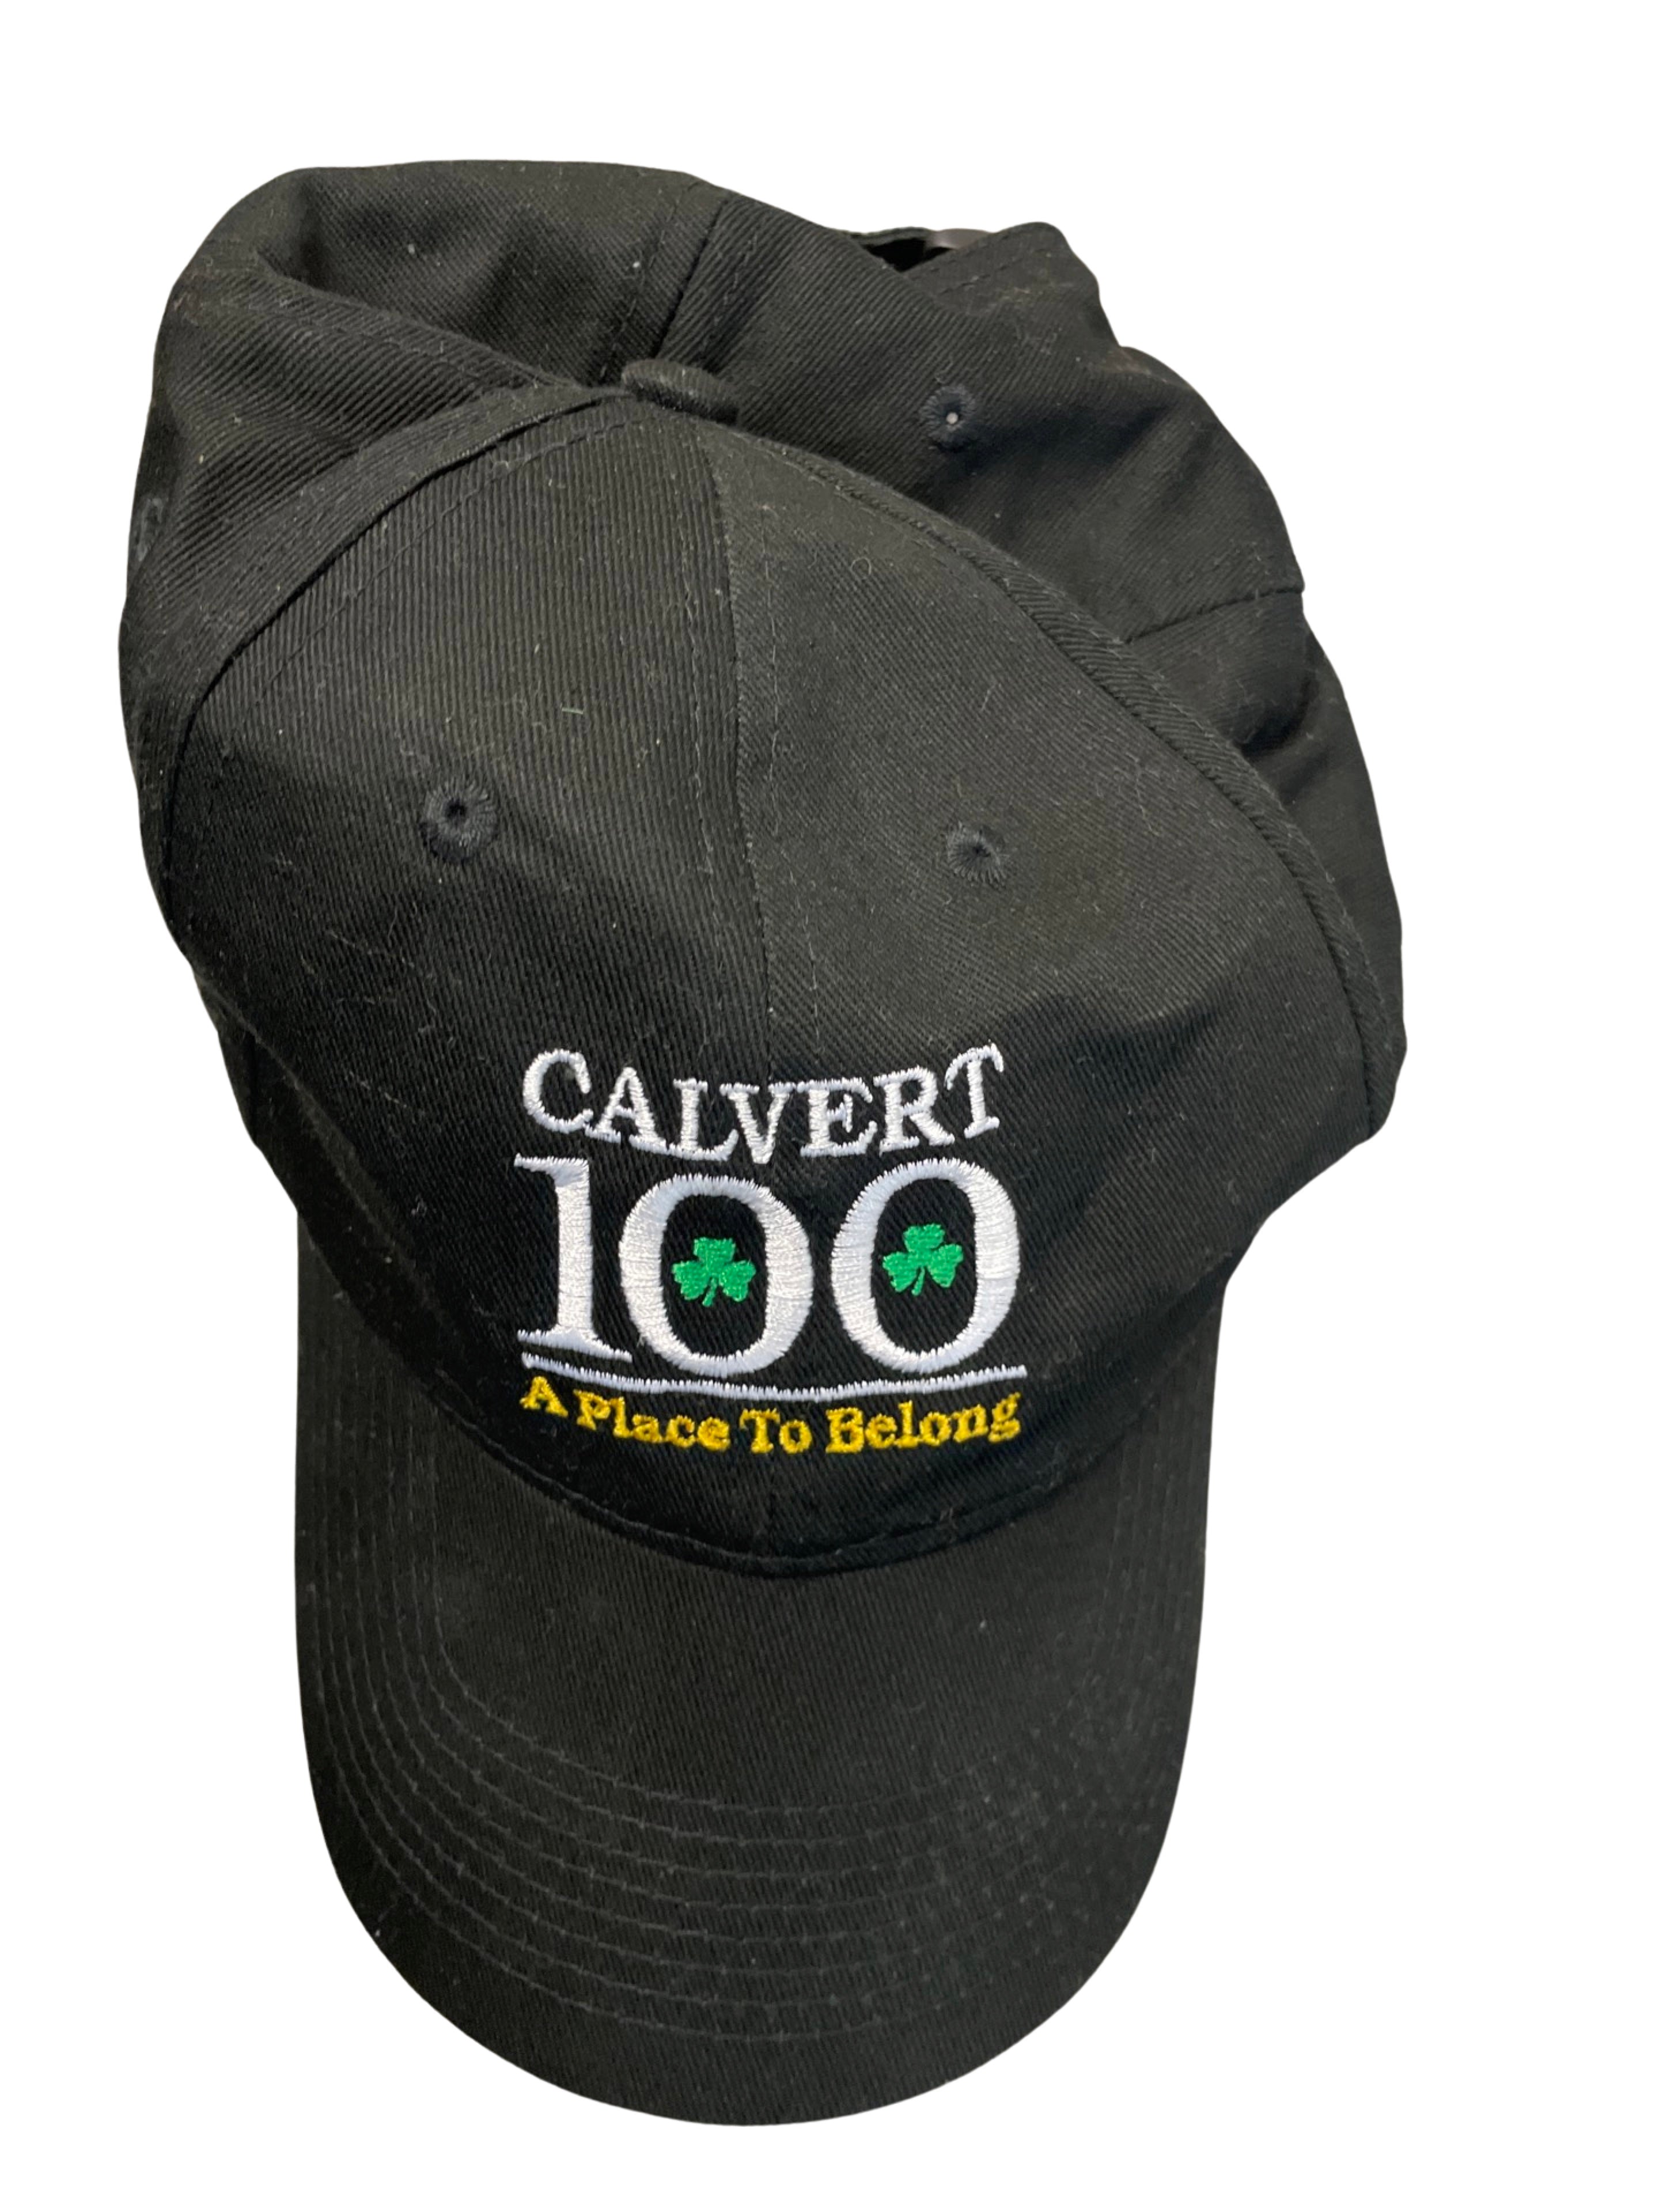 Rubynee vintage y2k Calvert 100 black baseball cap